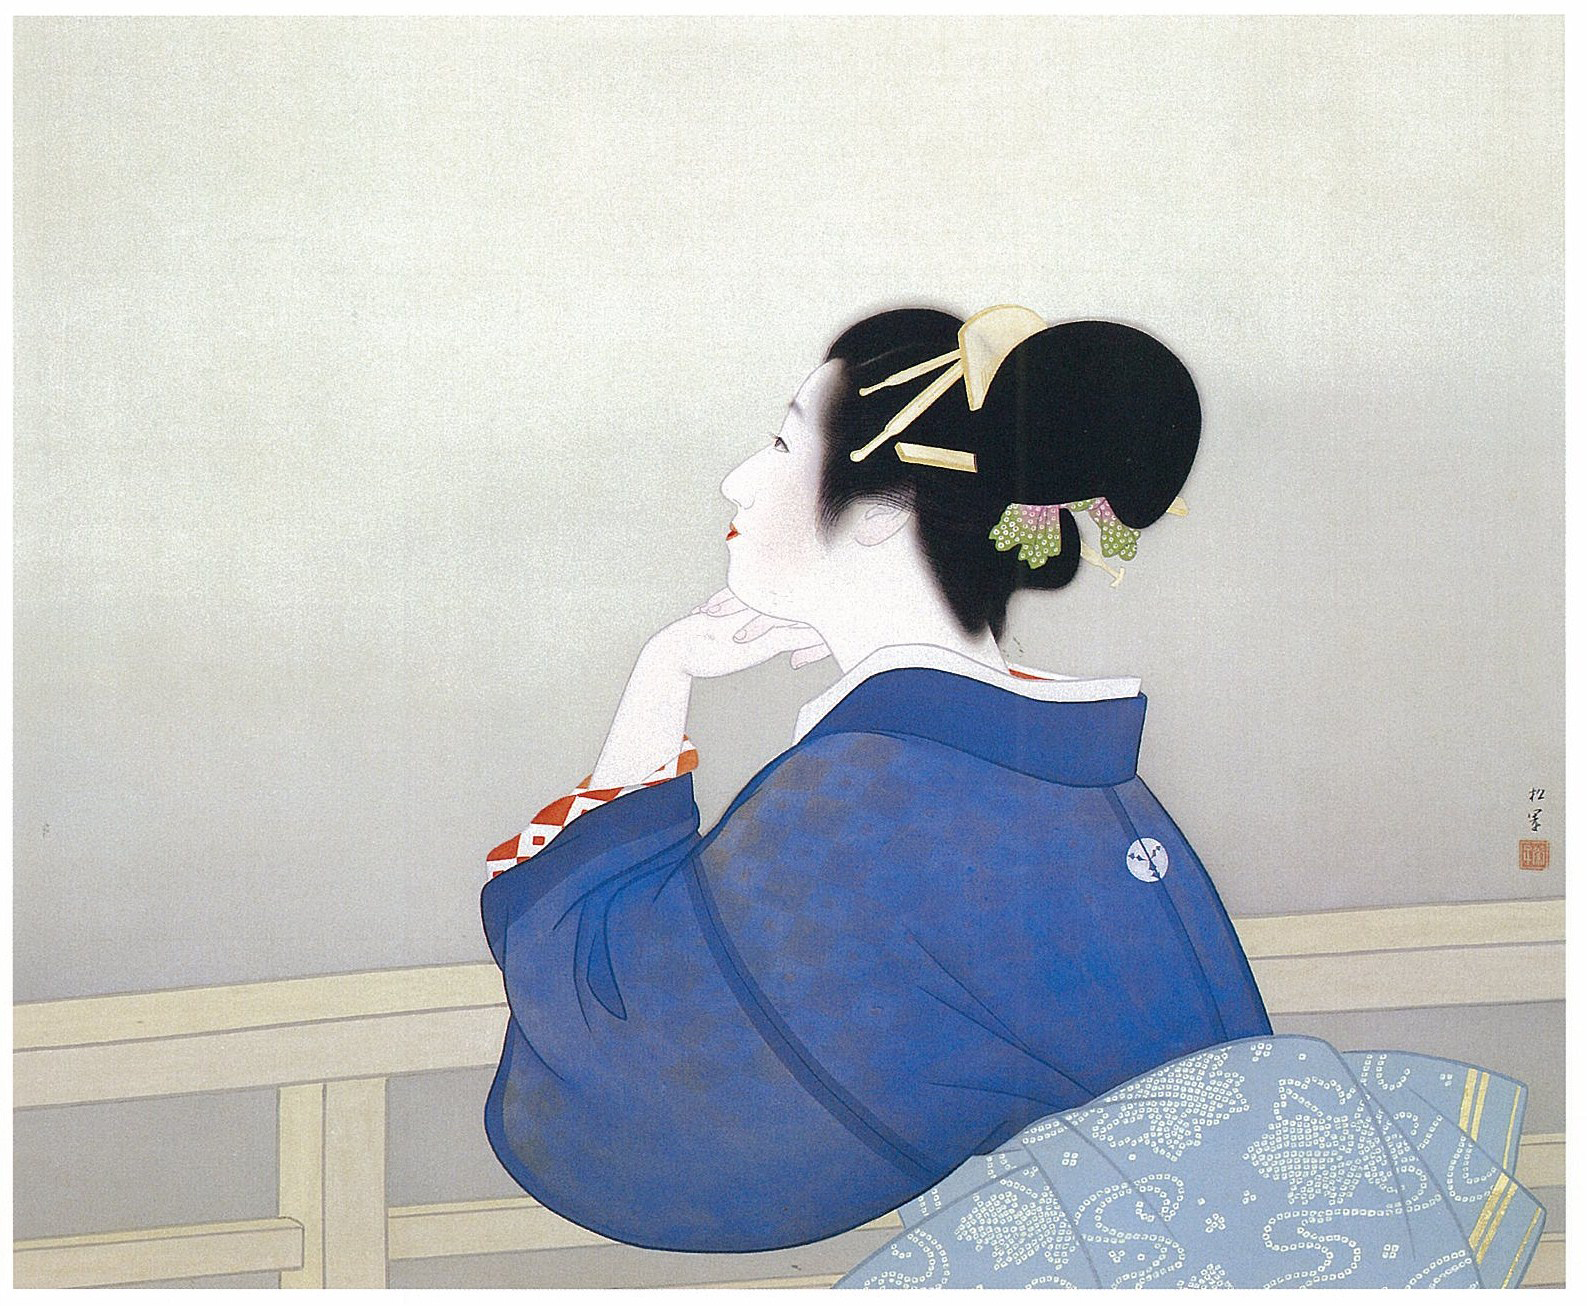 Donna in attesa del sorgere della luna by Uemura Shōen - 1944 - 86 x 73 cm Adachi Museum of Art